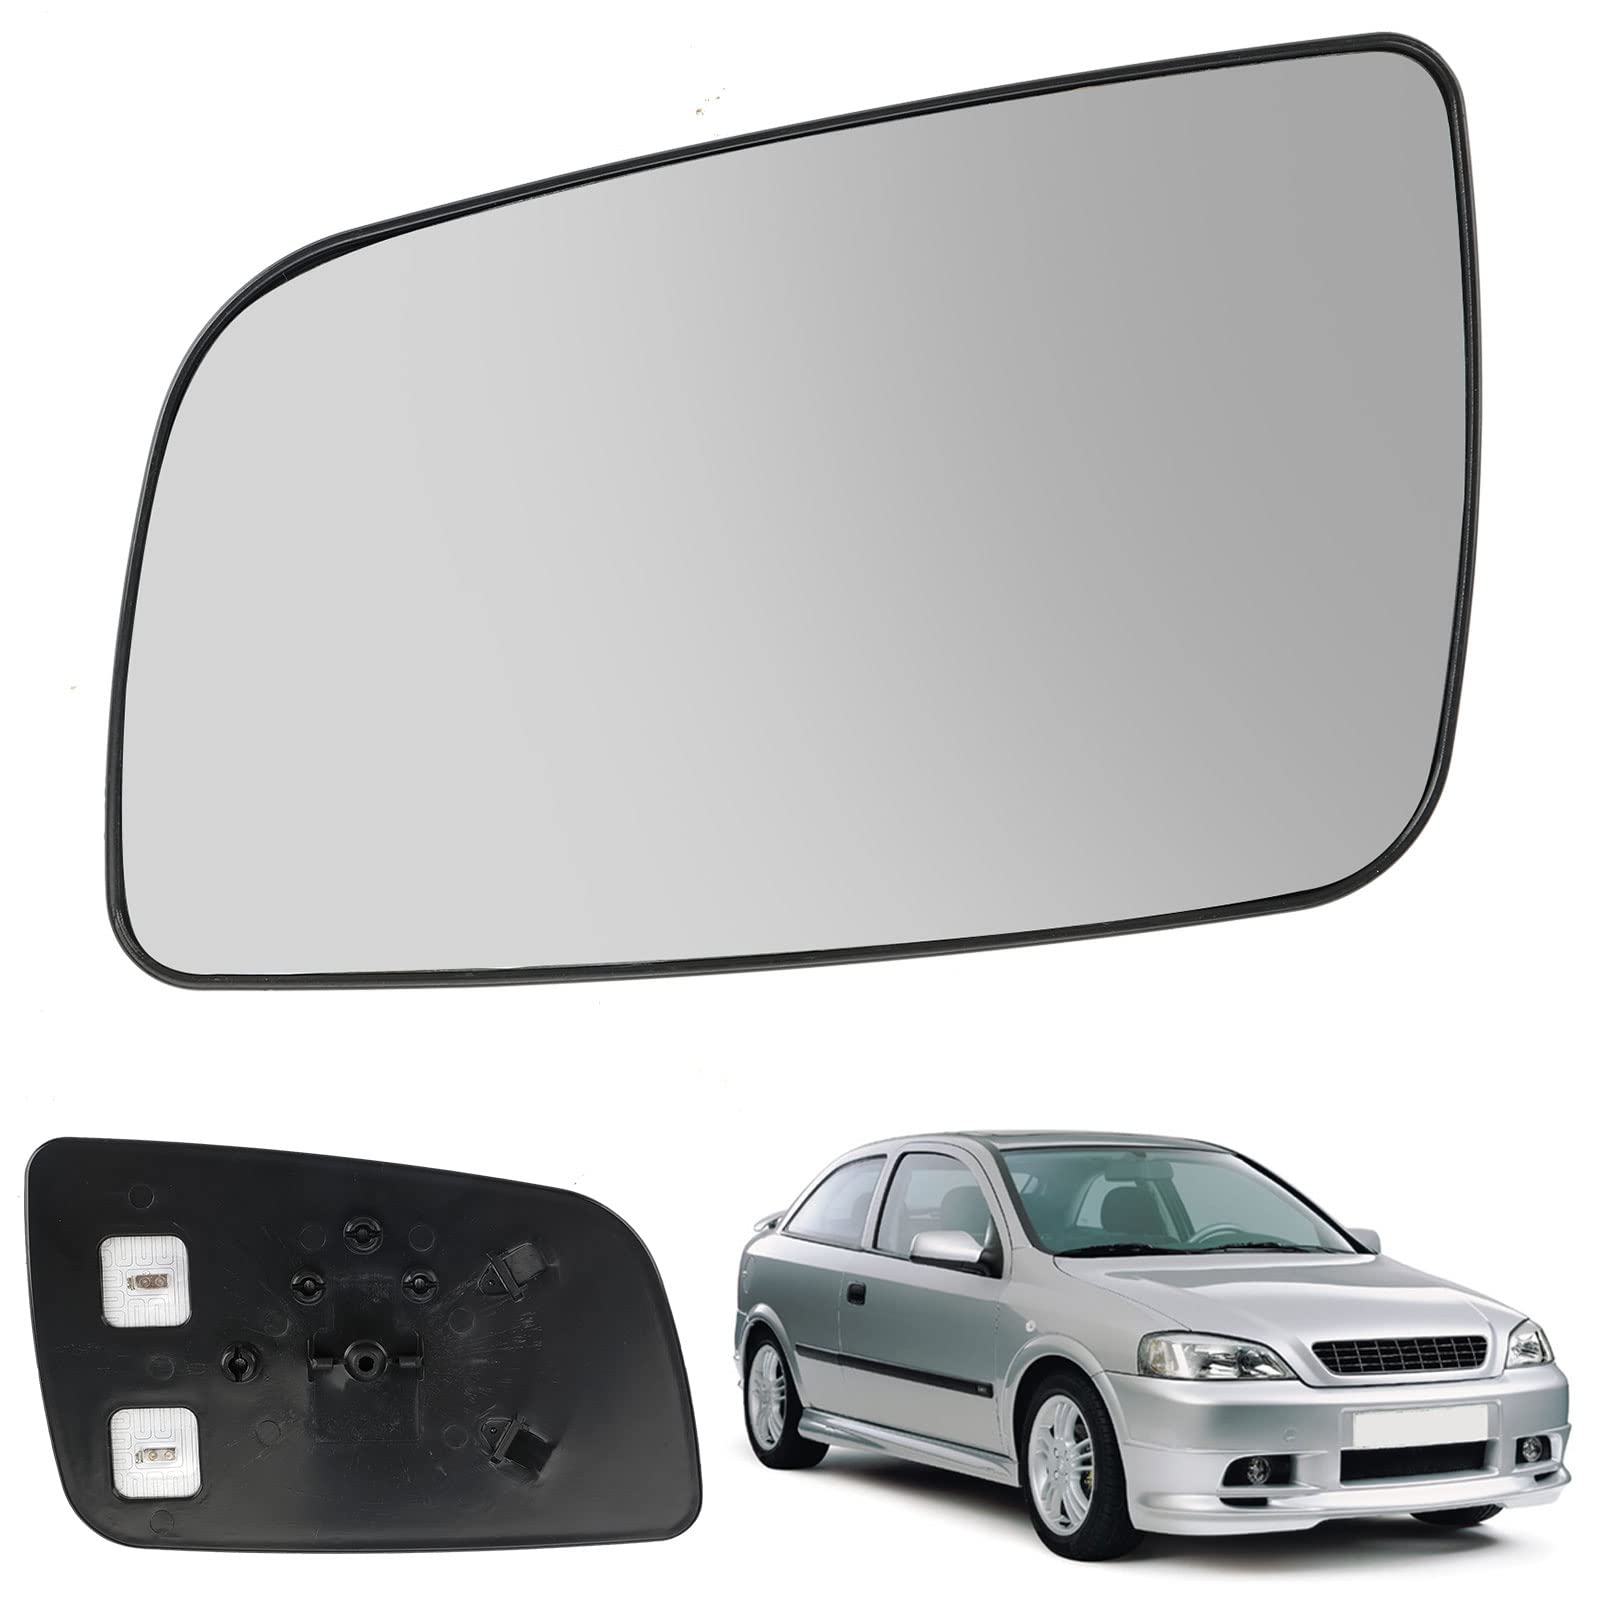 Spiegelglas Ersatz für Opel Astra G 1998-2004, Außenspiegel Glas Asphärisch, Außenspiegel Verstellbar Geeignet, Umkehrlinse Rückfahrglas Spiegel (Astra G-Links) von Soekodu